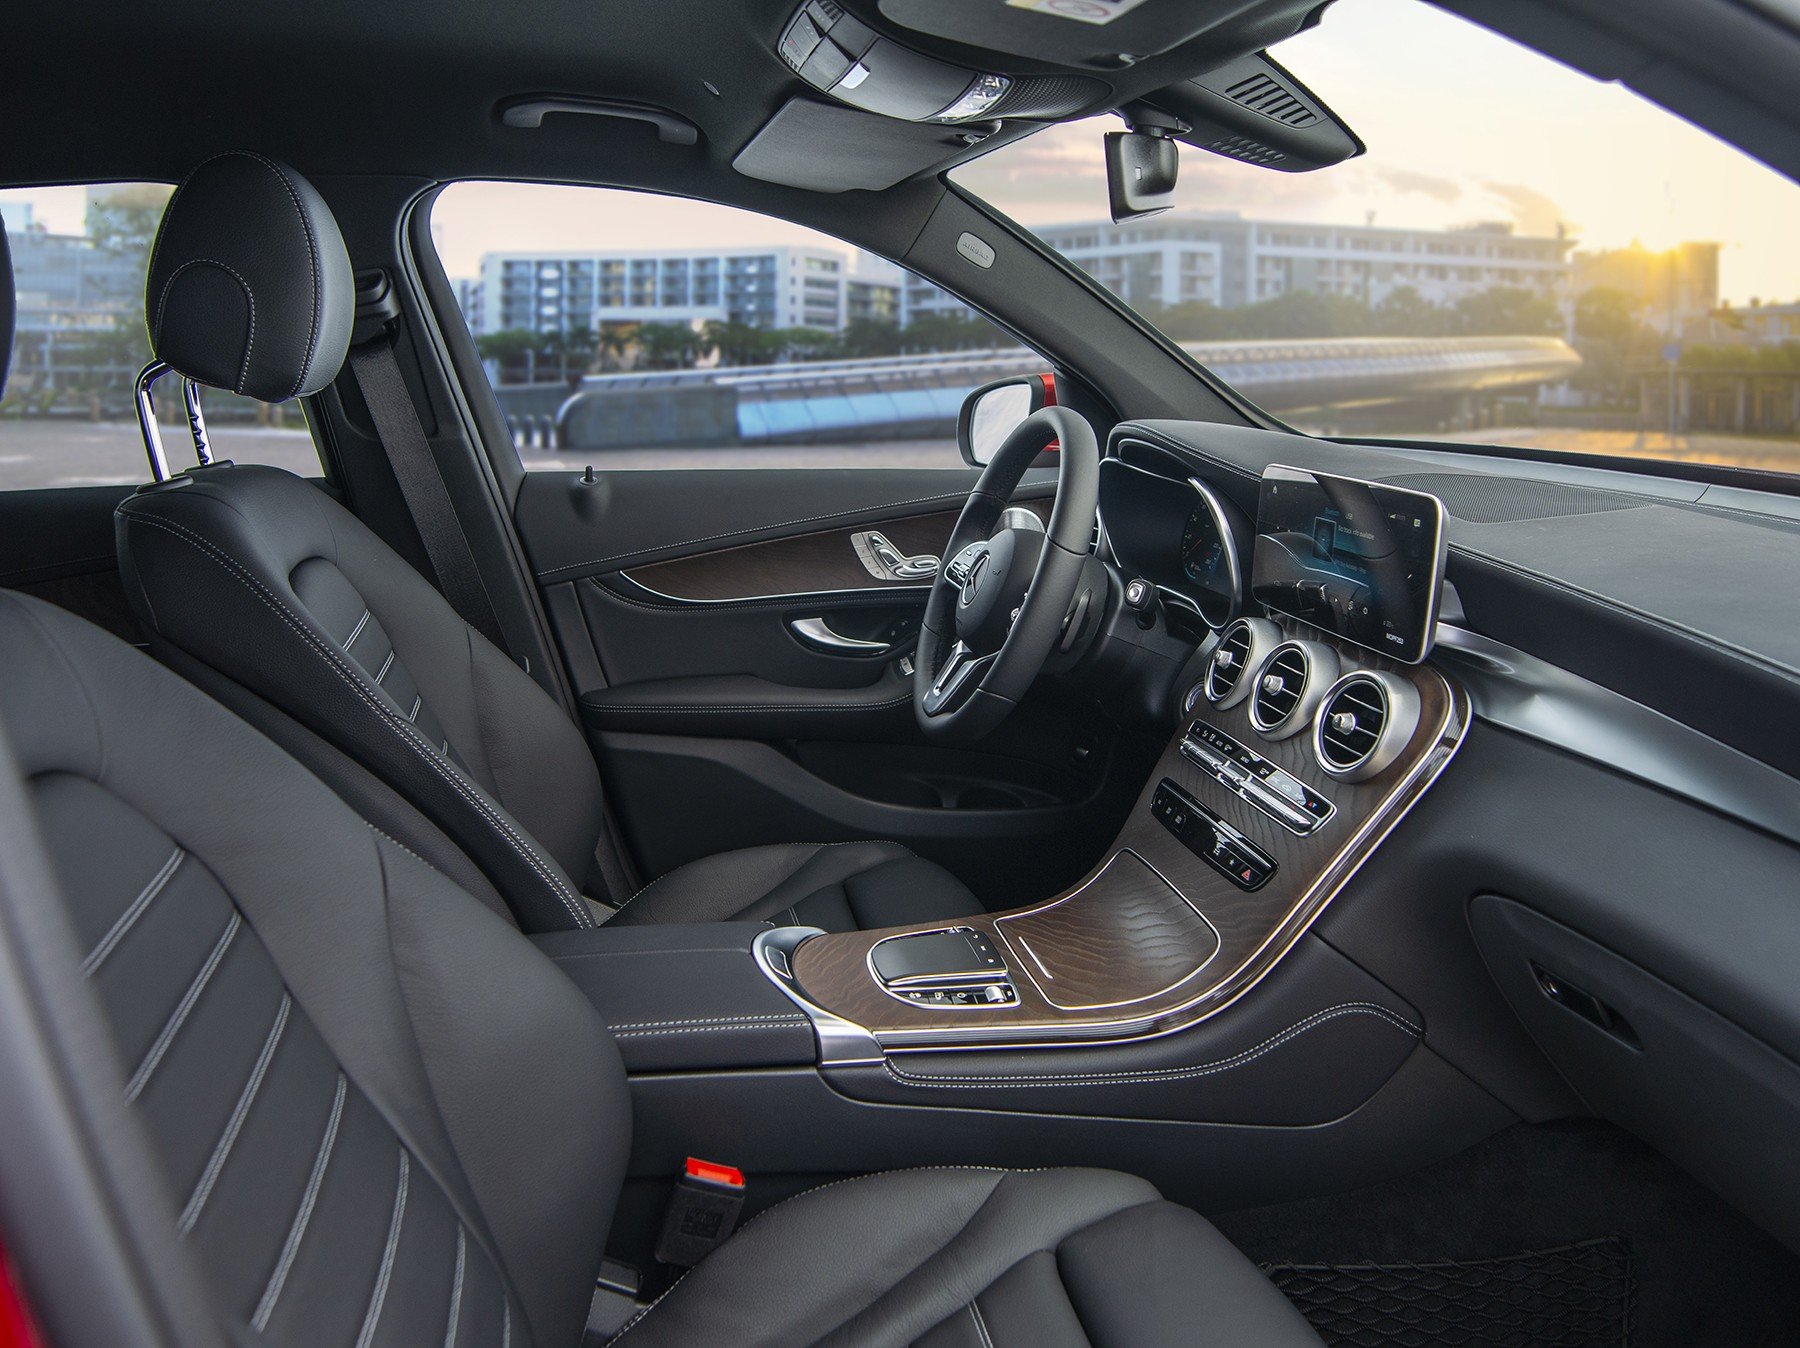 Chi tiết giá xe Mercedes GLC 200 2020, thông số kỹ thuật, đánh giá nội ngoại thất và khả năng vận hành xe.